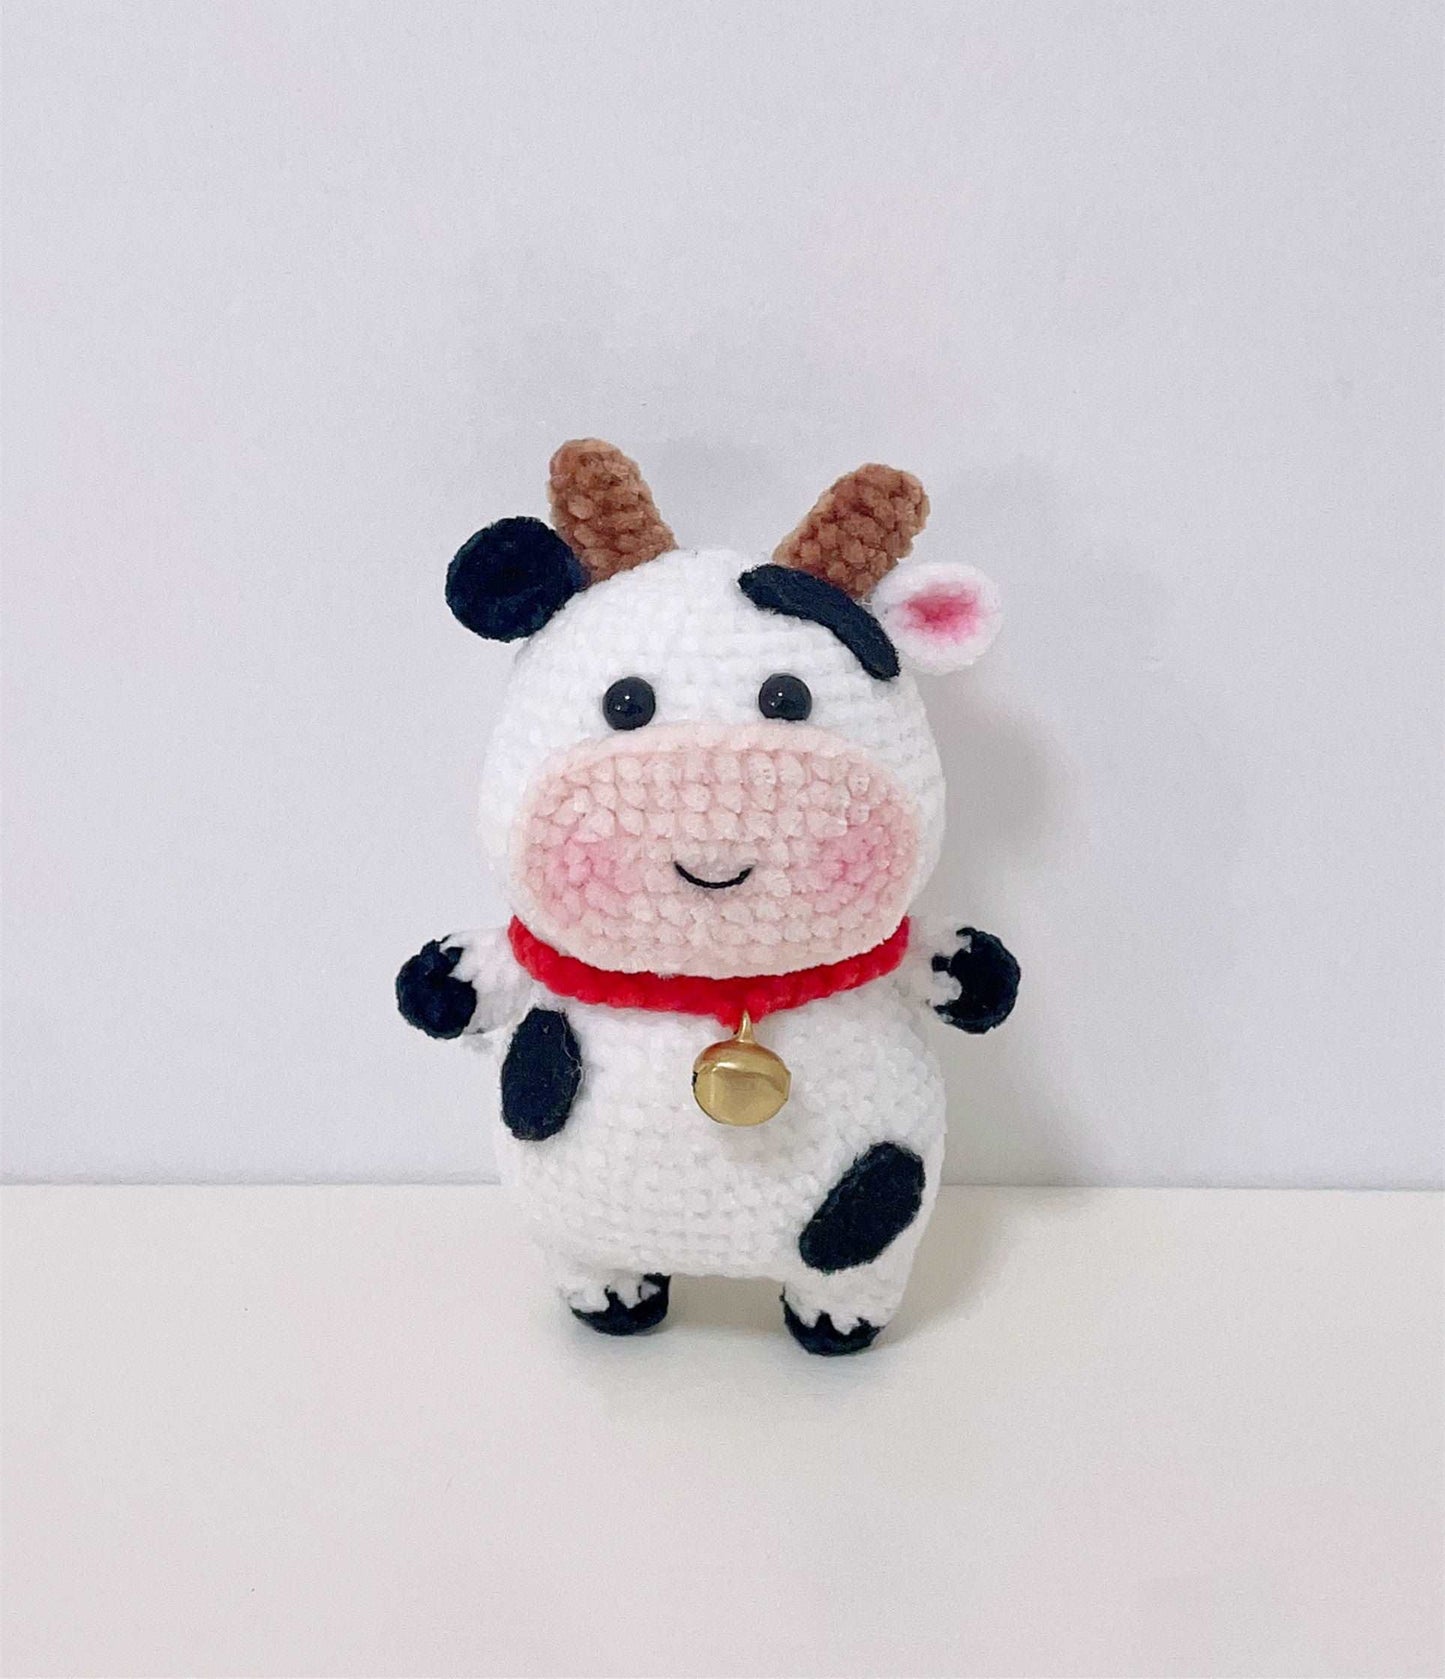 Artisanal Cow Crochet Sculpture